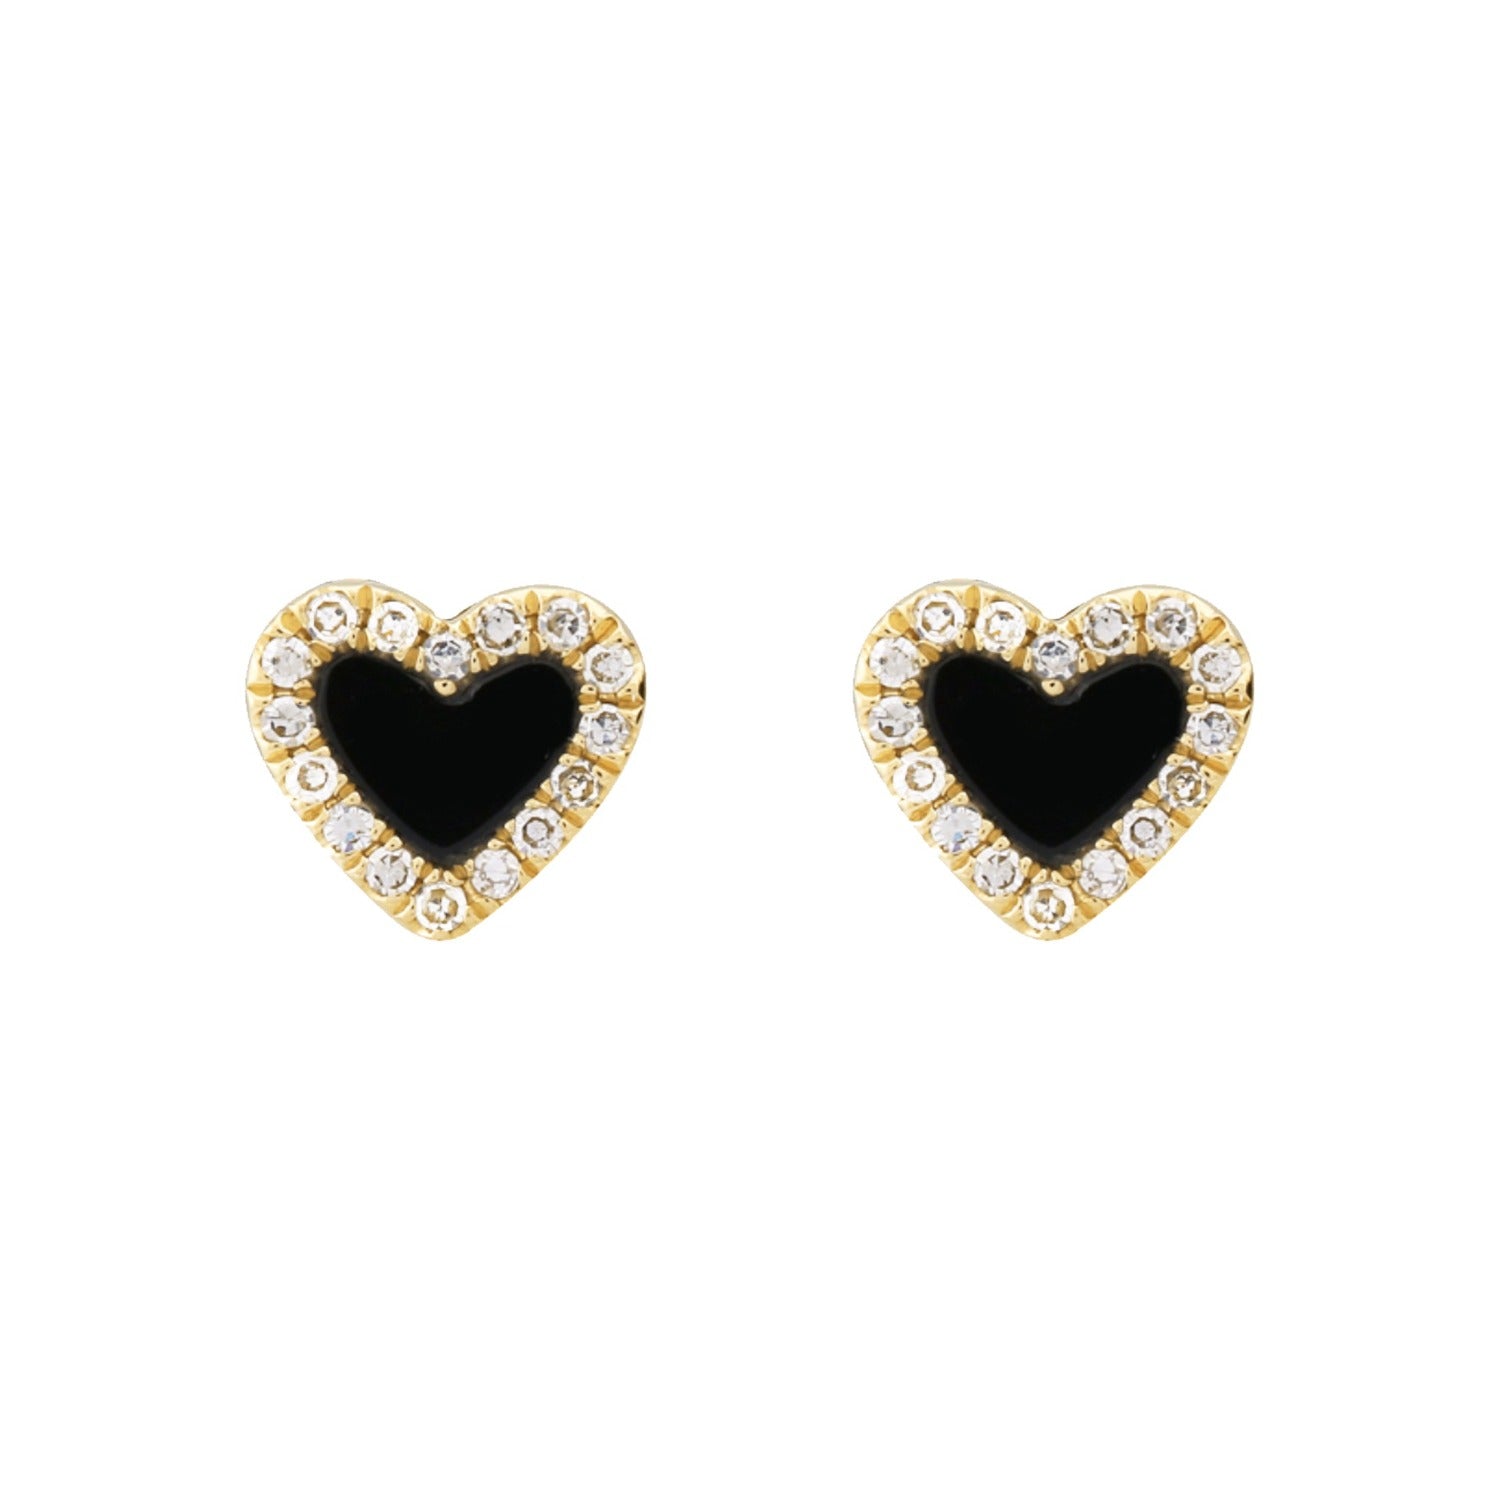 Mini heart stud earrings in black onyx with diamonds